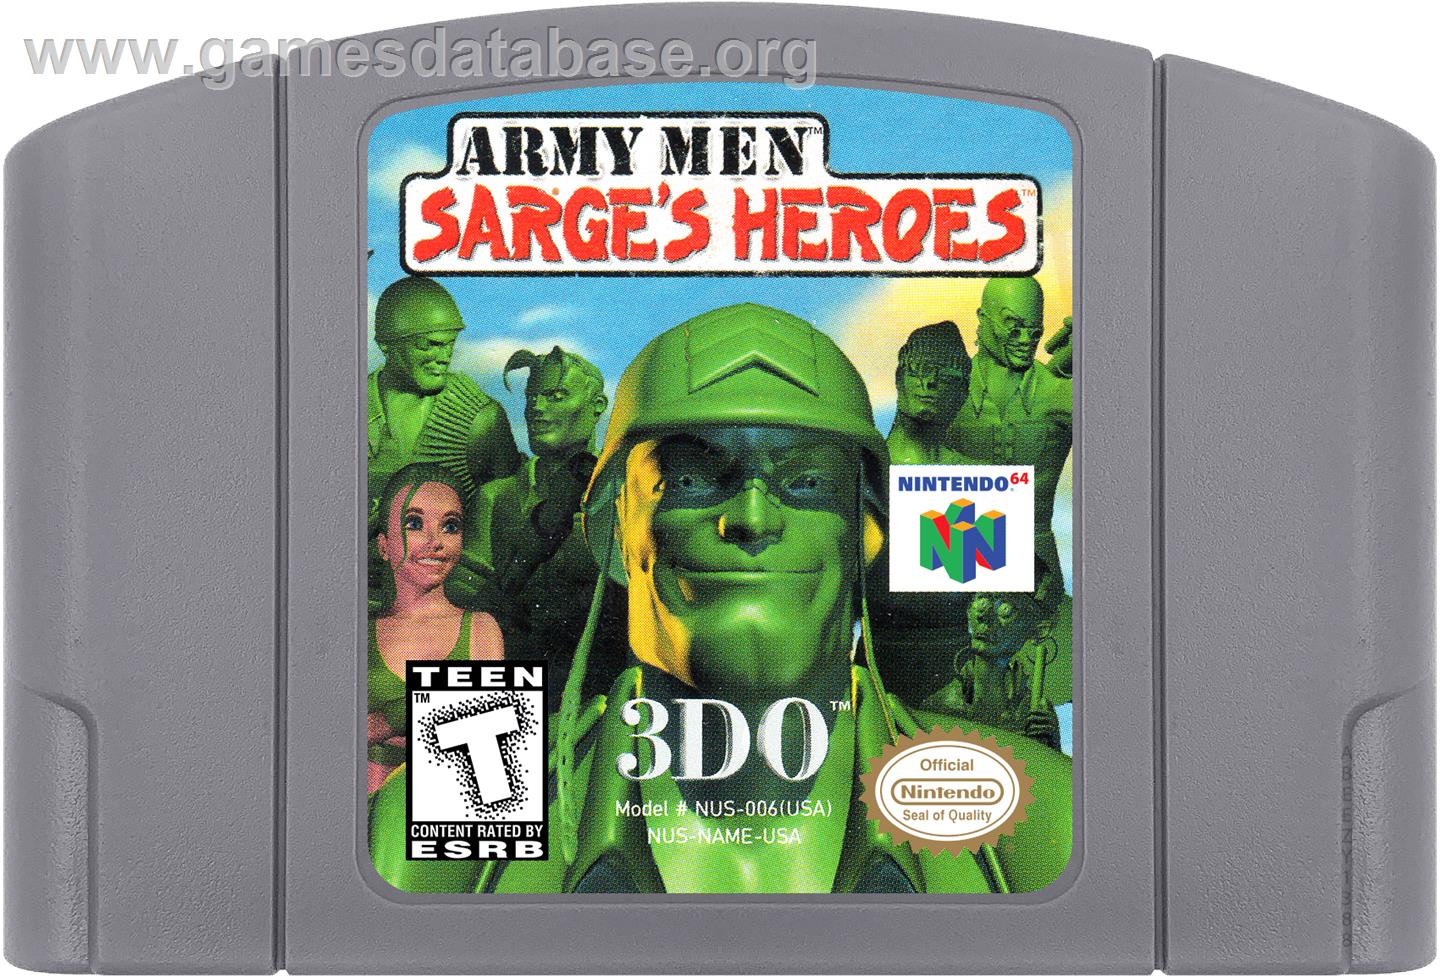 Army Men: Sarge's Heroes - Nintendo N64 - Artwork - Cartridge